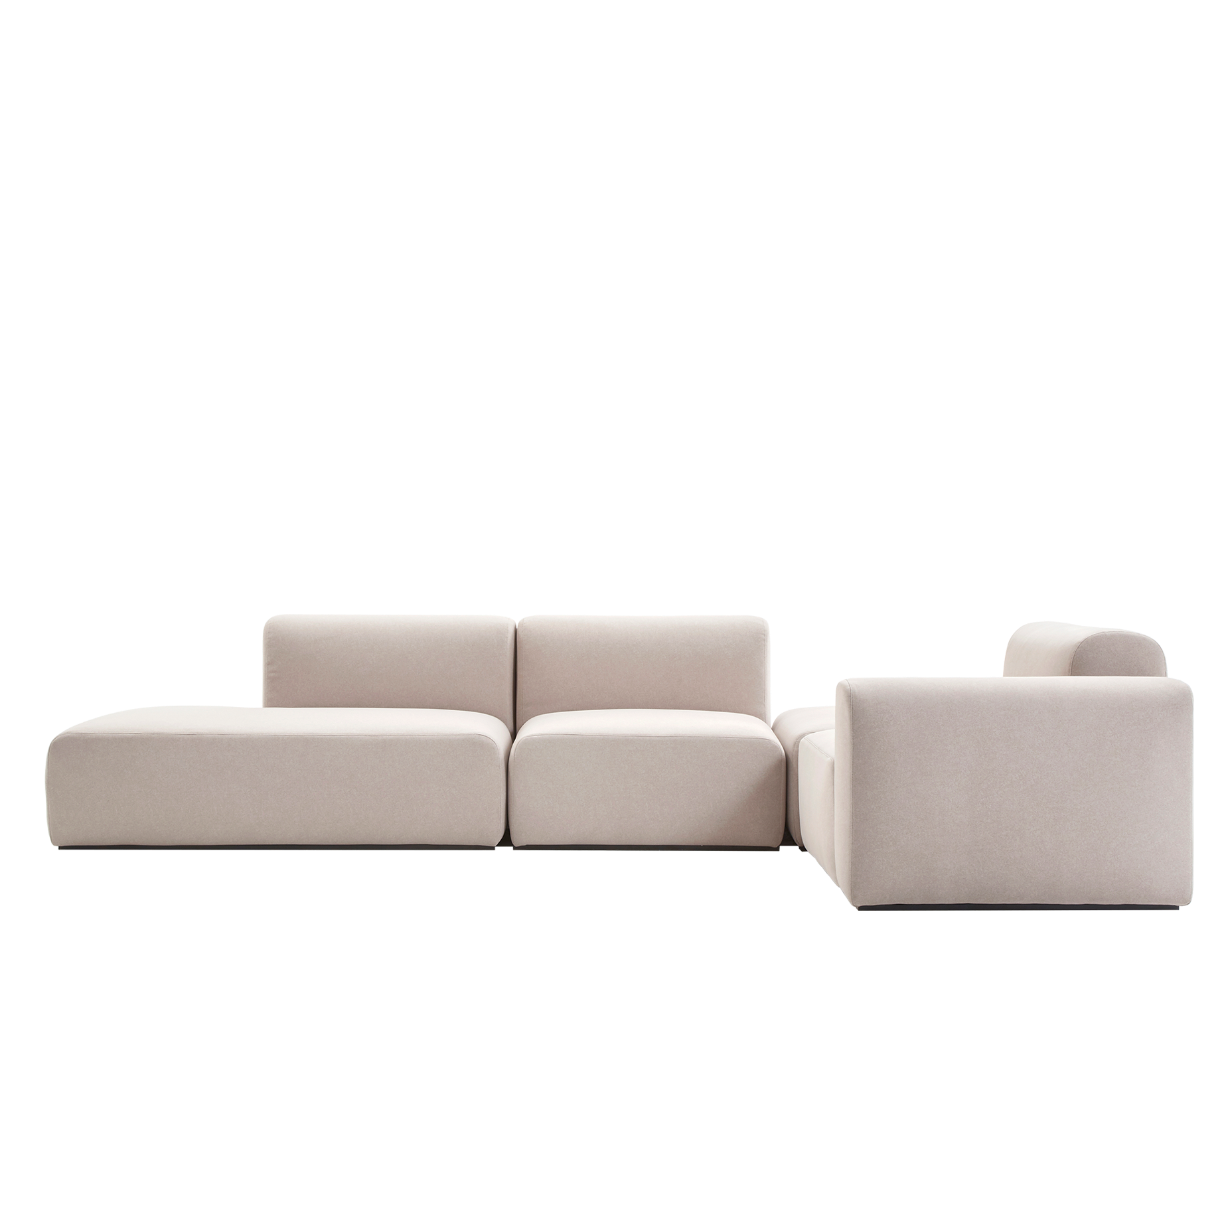 (주)도이치 전시품 판매(일산)    DOICH ® Aquaclean PEN3 modular couch sofa  도이치 Pen3  4인 카우치 소파 ( 카우치+1인+1.5인) ) + 스툴 /(스페인 아쿠아클린)  [3주 주문제작]